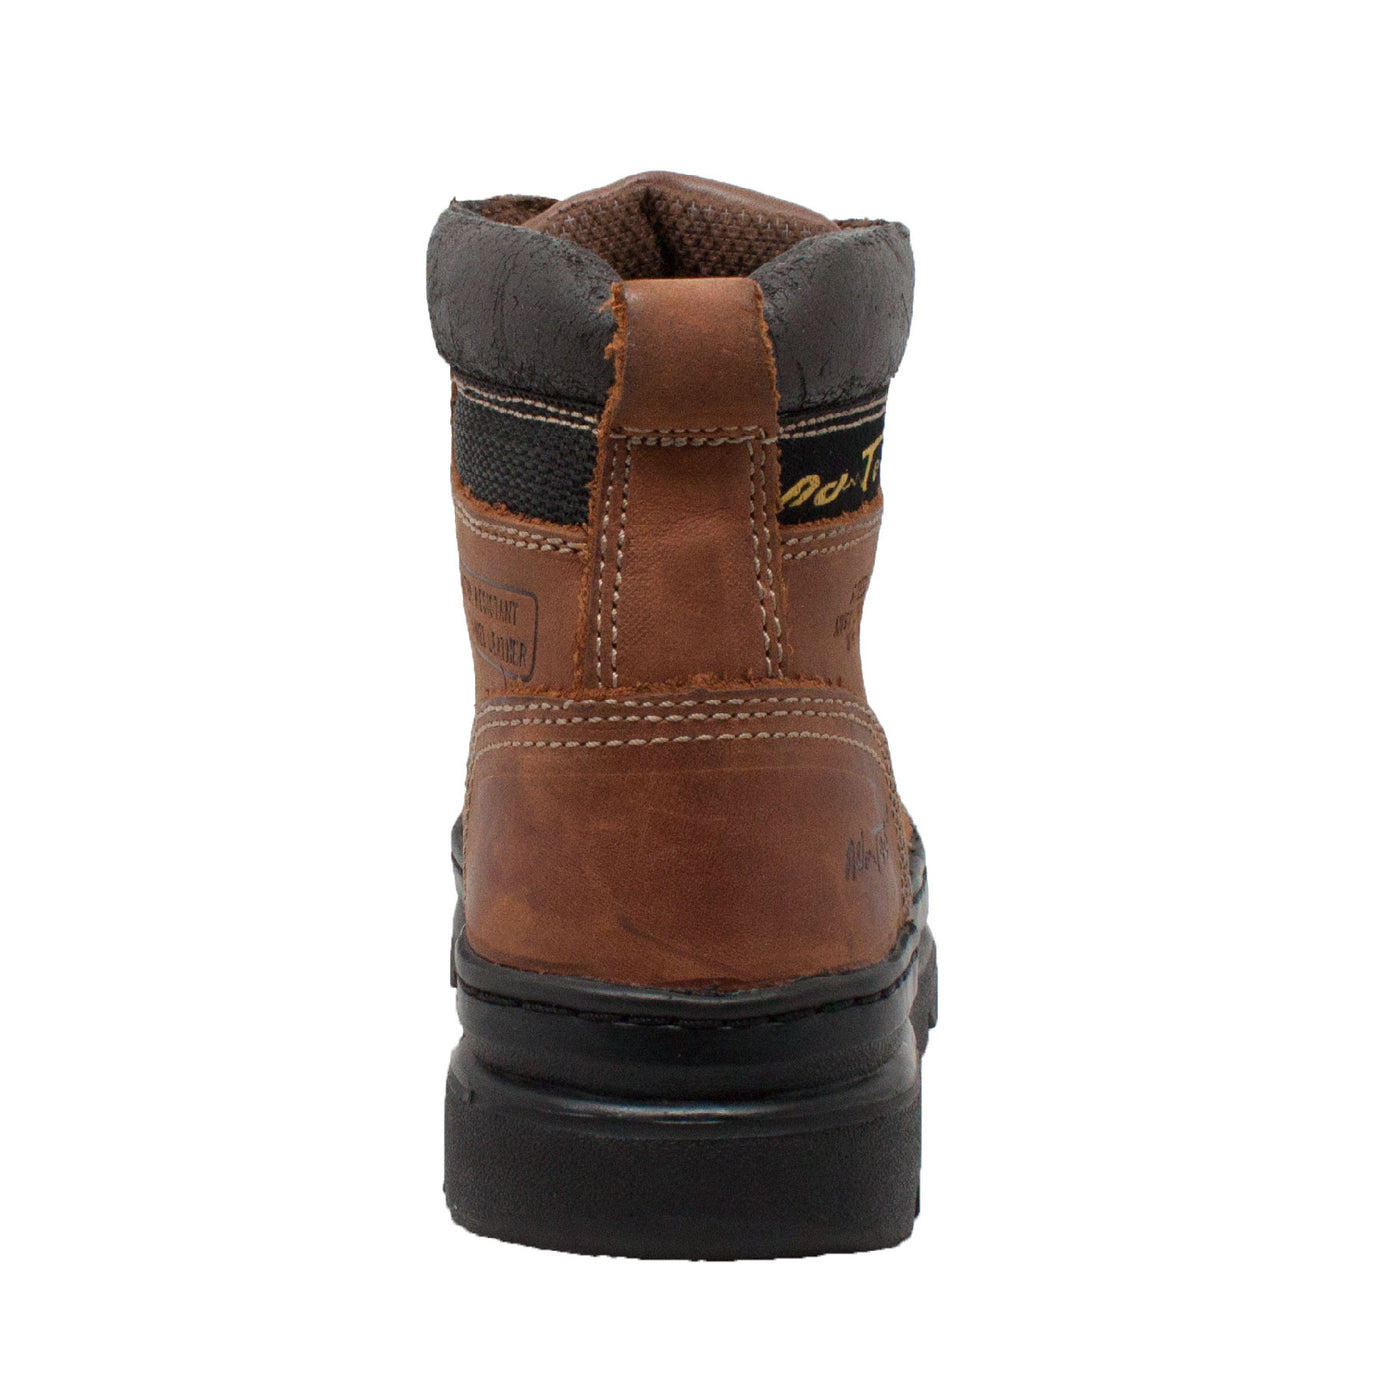 Women's 6" Steel Toe Work Boot Brown - 2977 - Shop Genuine Leather men & women's boots online | AdTecFootWear